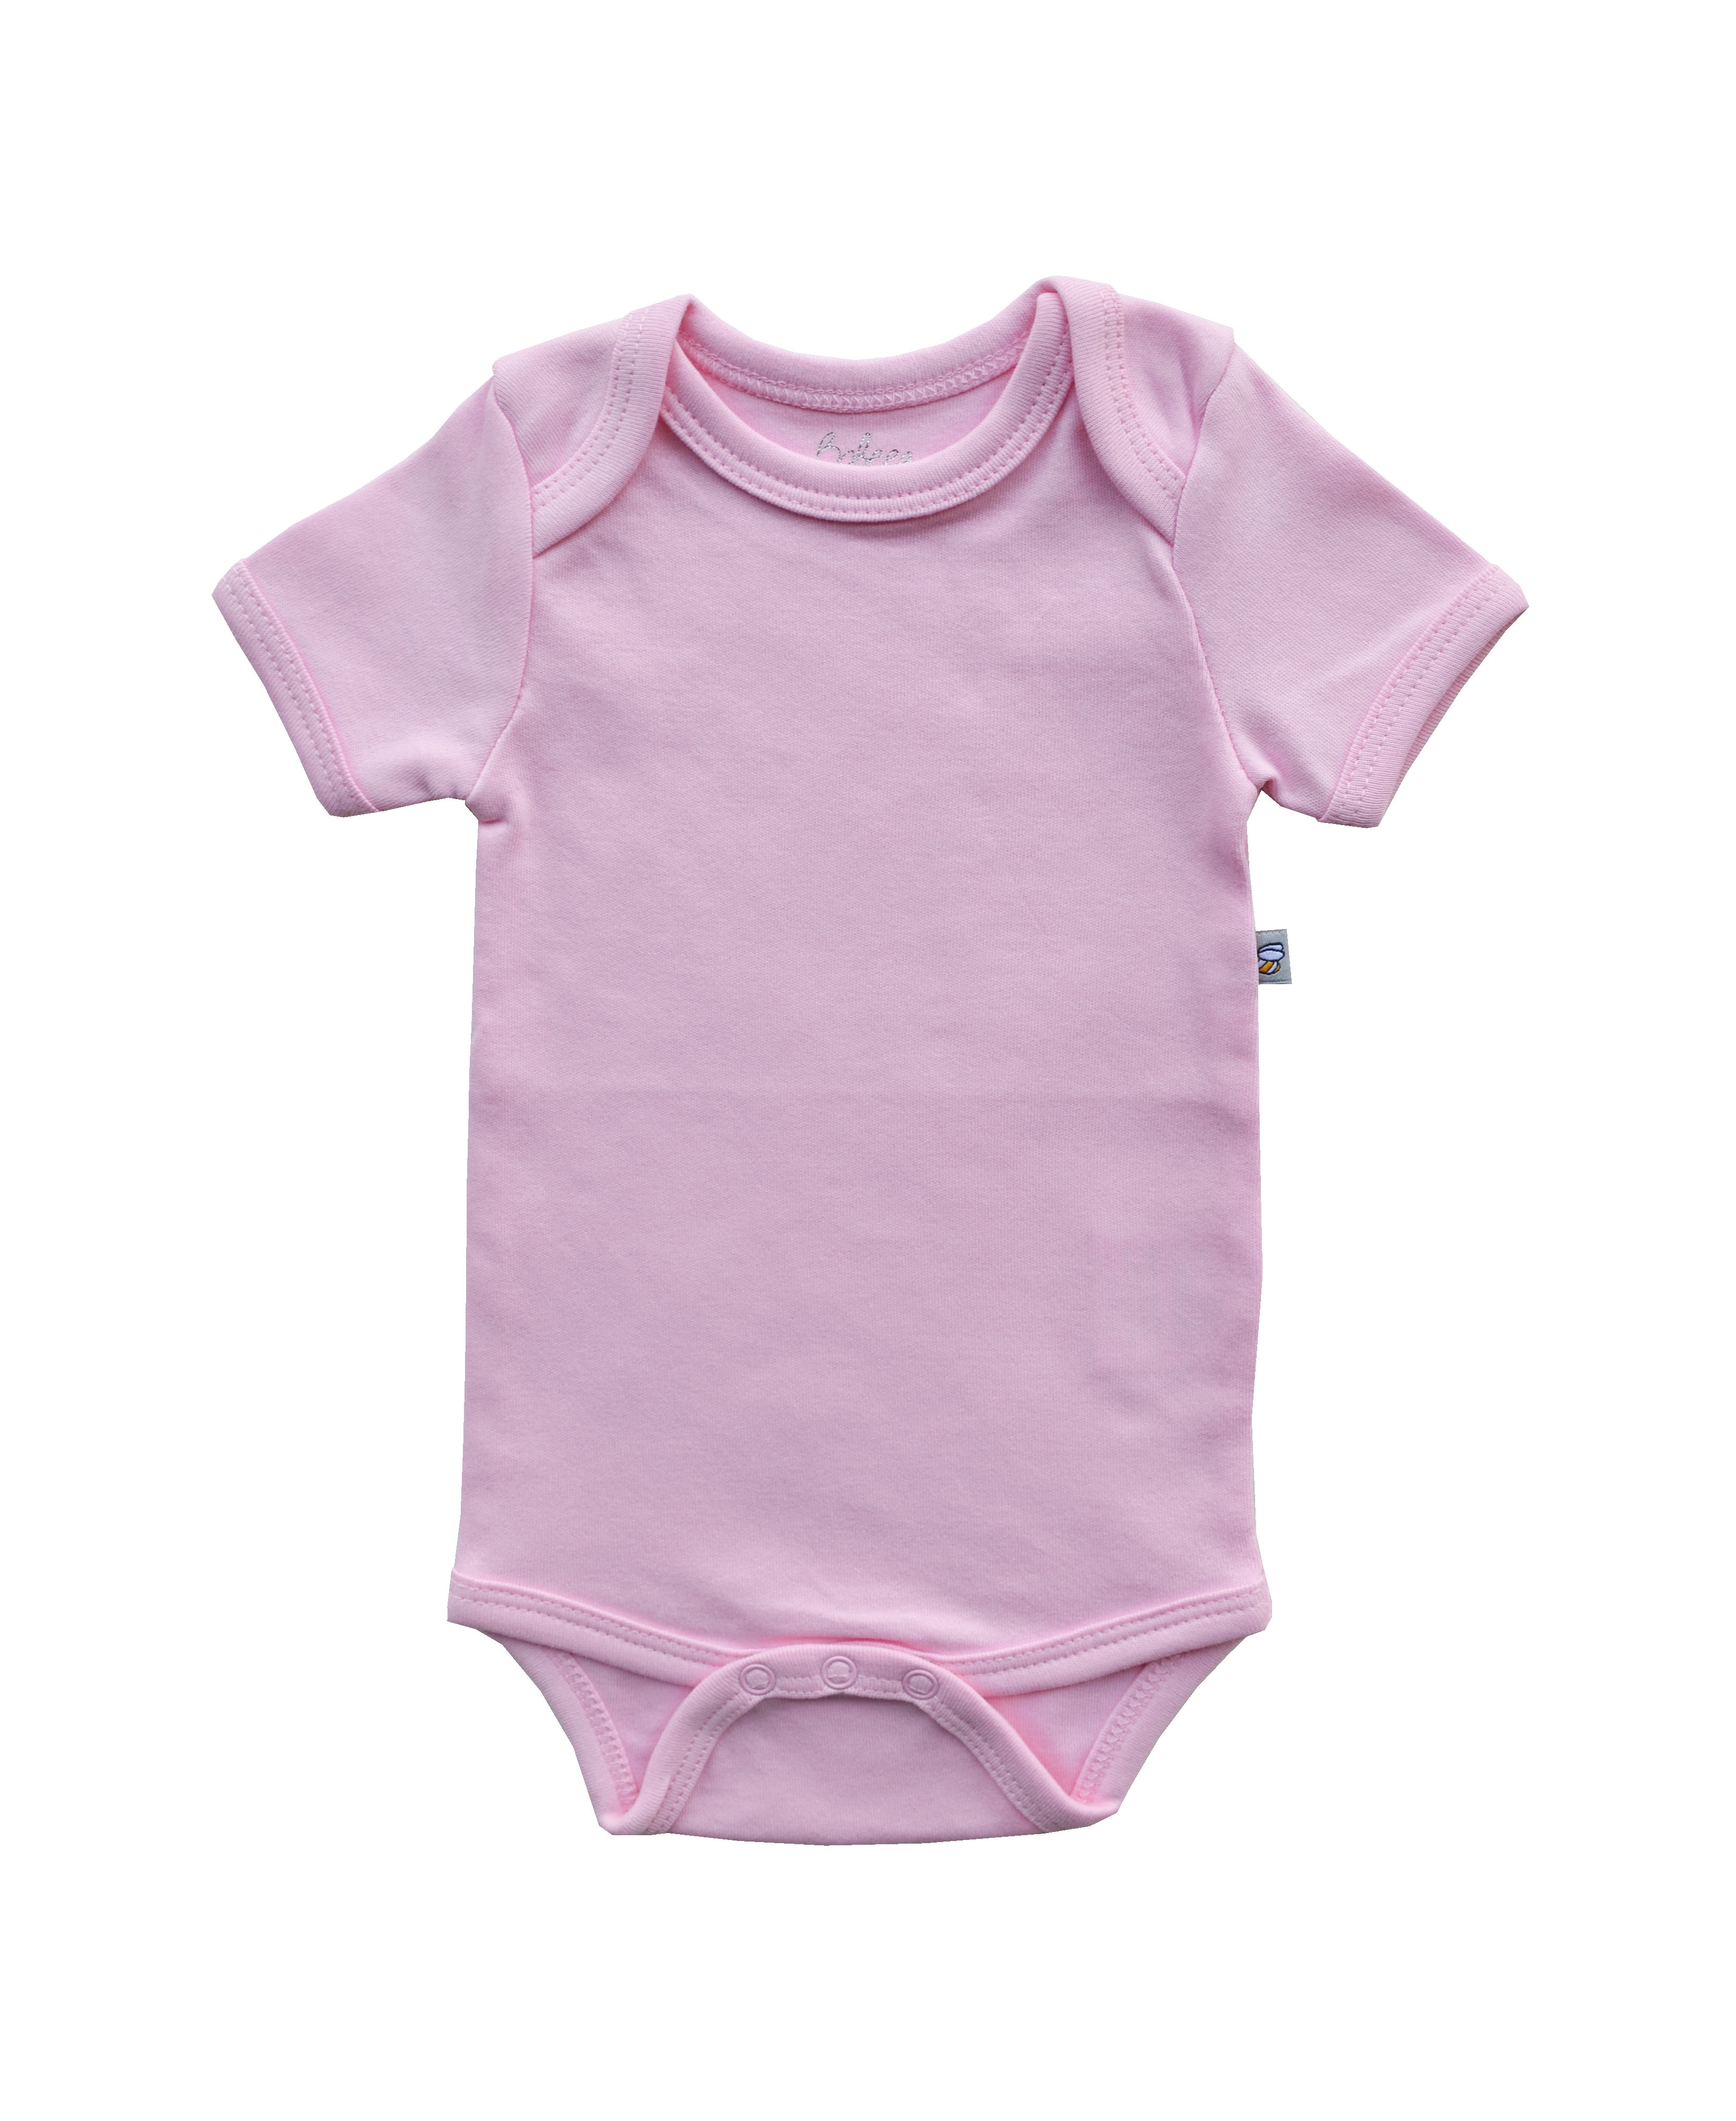 Pink Baby Body (100% Cotton Interlock Biowash)